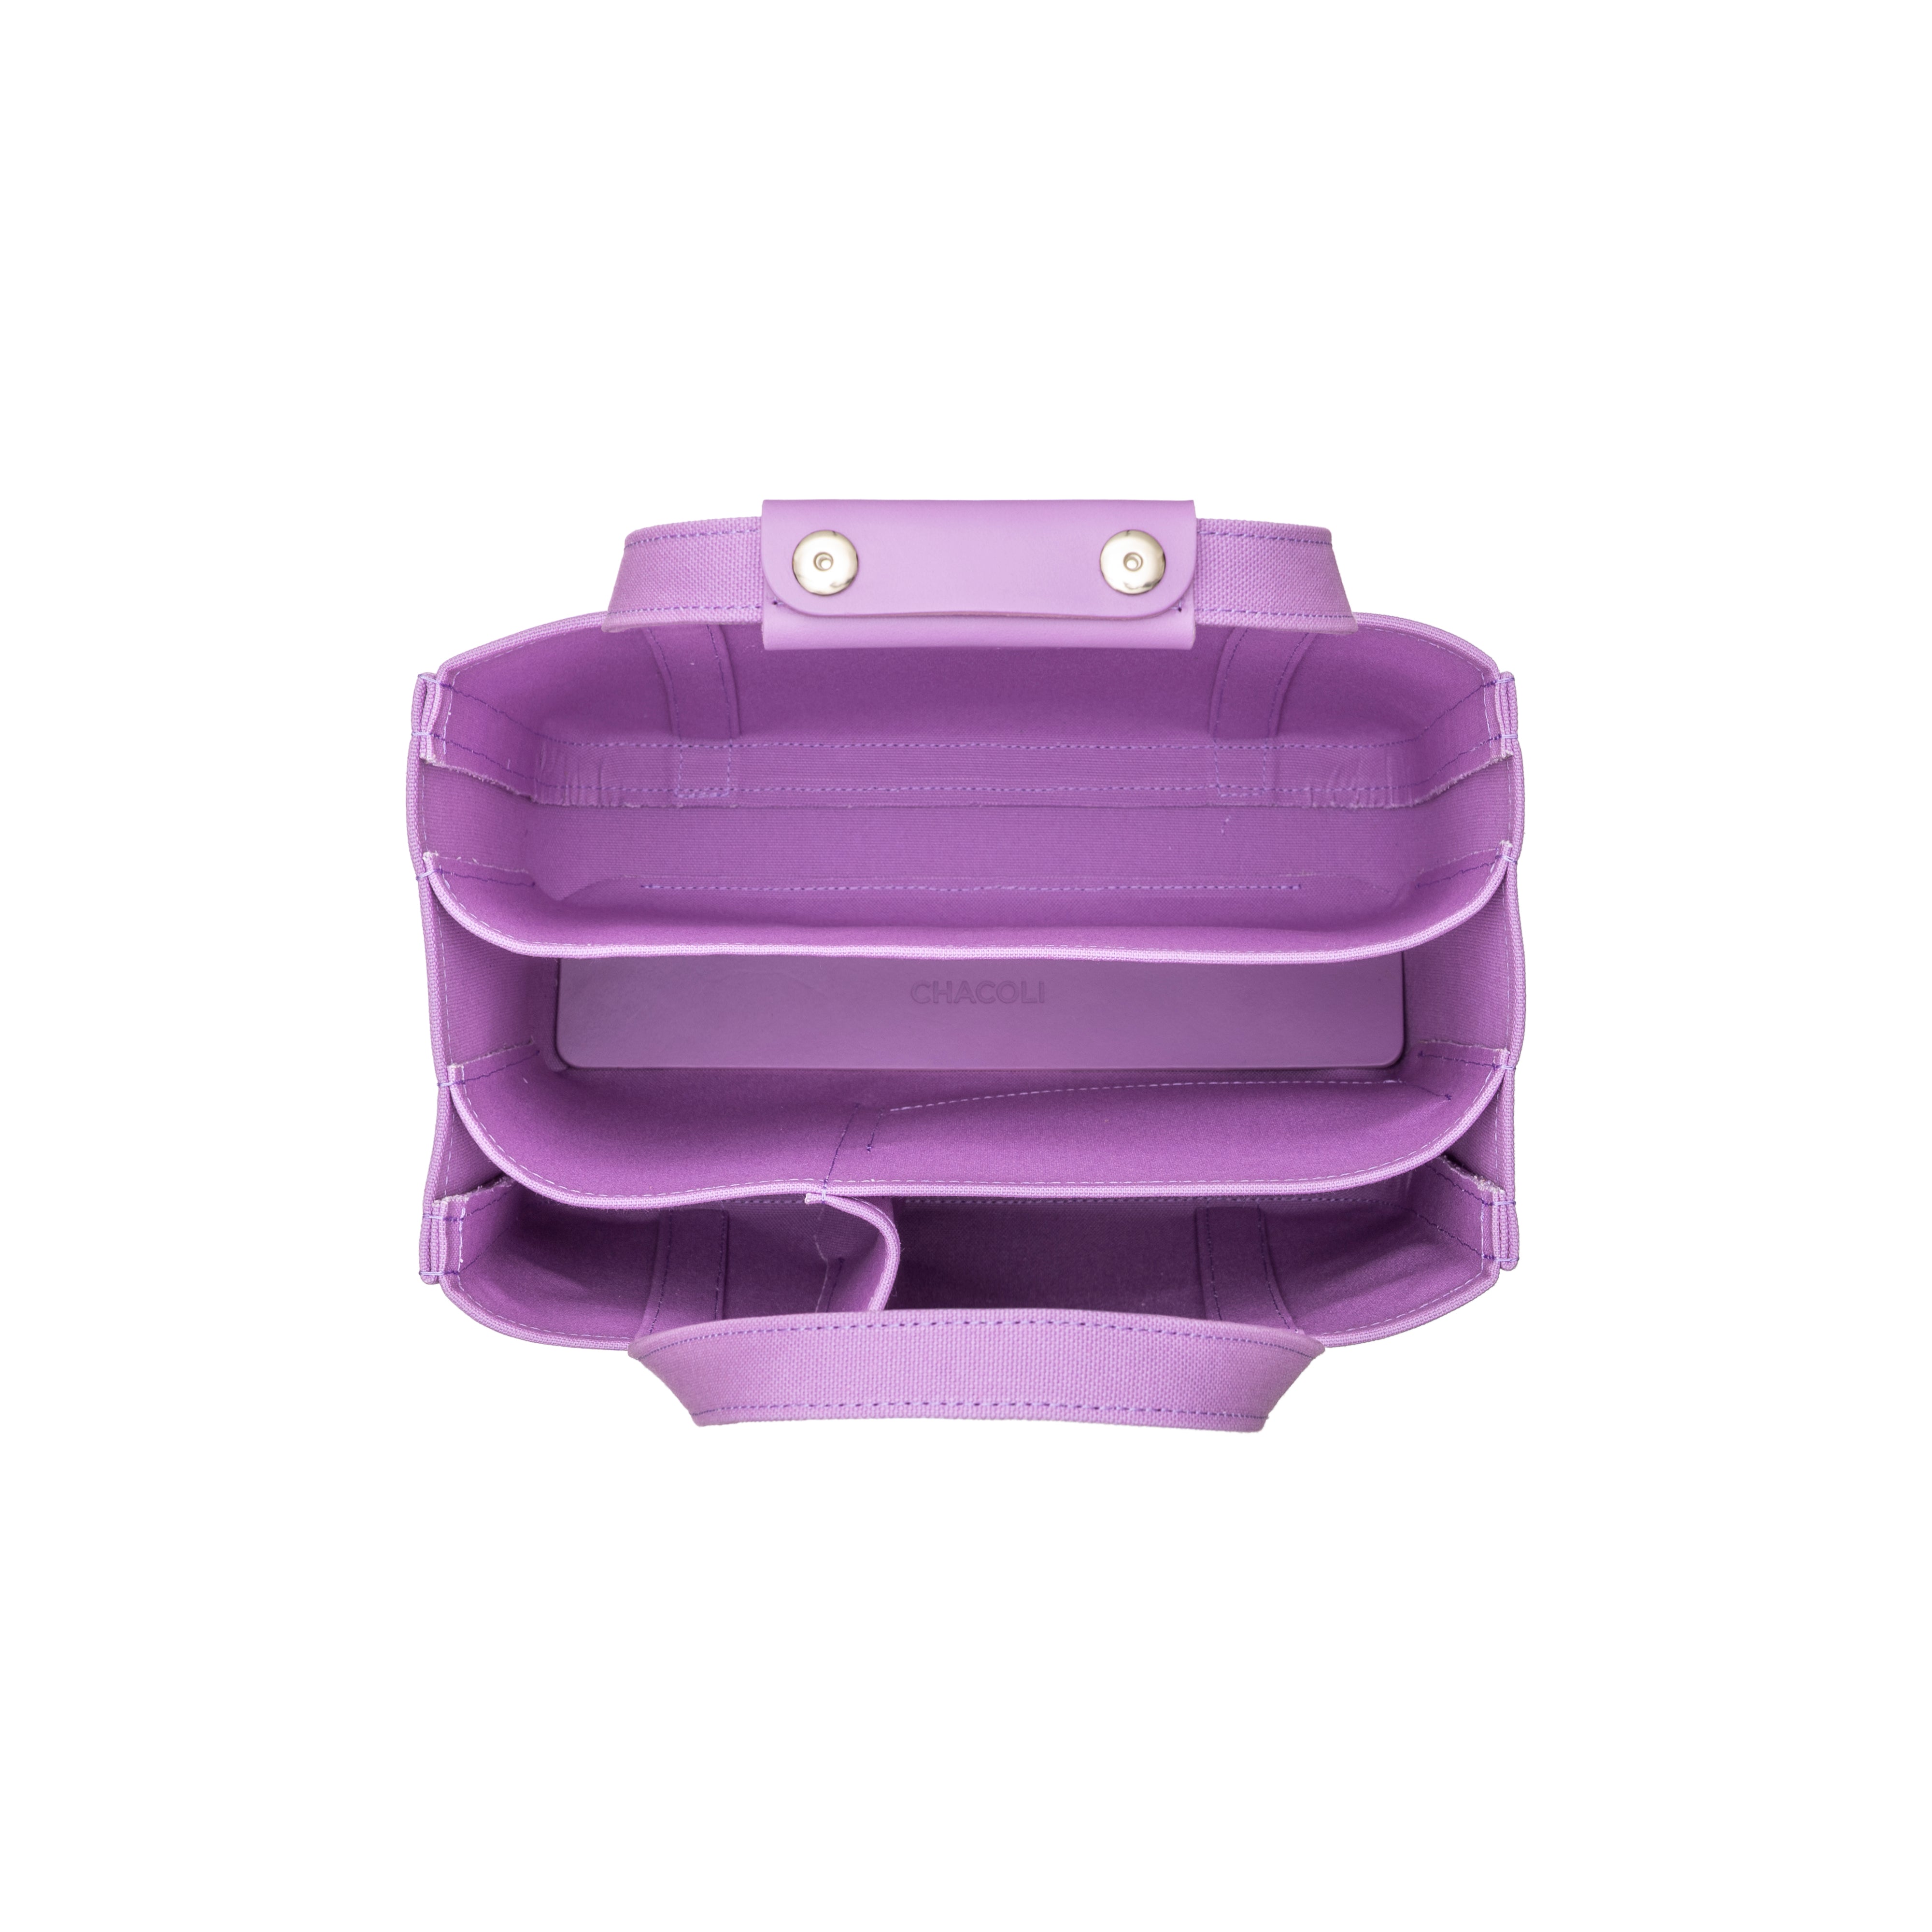 CHACOLI - 05 Tote W330 X H280 X D180 - (Purple) – DSMG E-SHOP